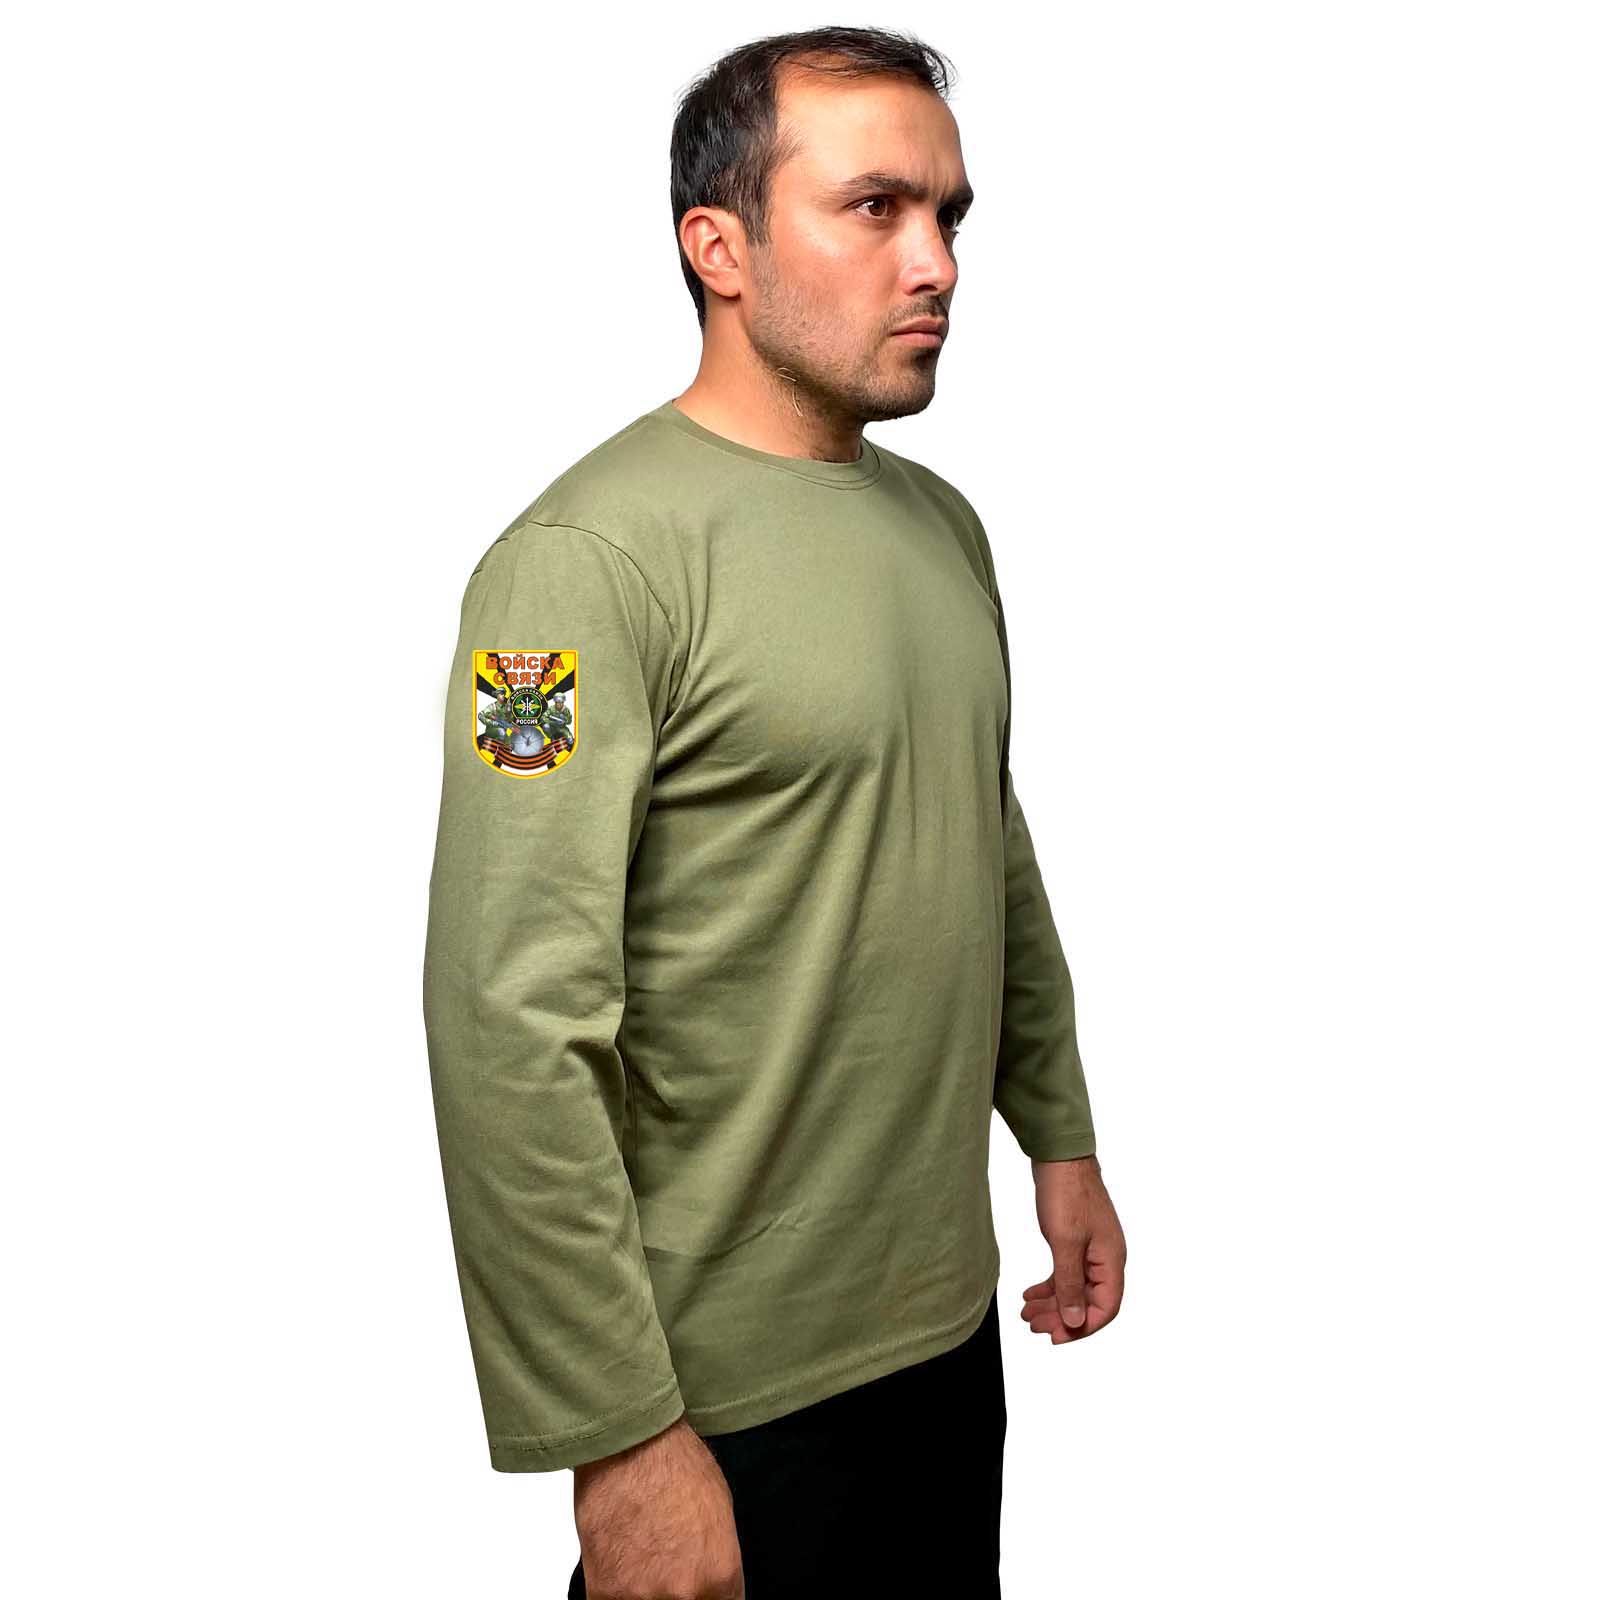 Купить надежную футболку с длинным рукавом с термотрансфером Войска связи с доставкой